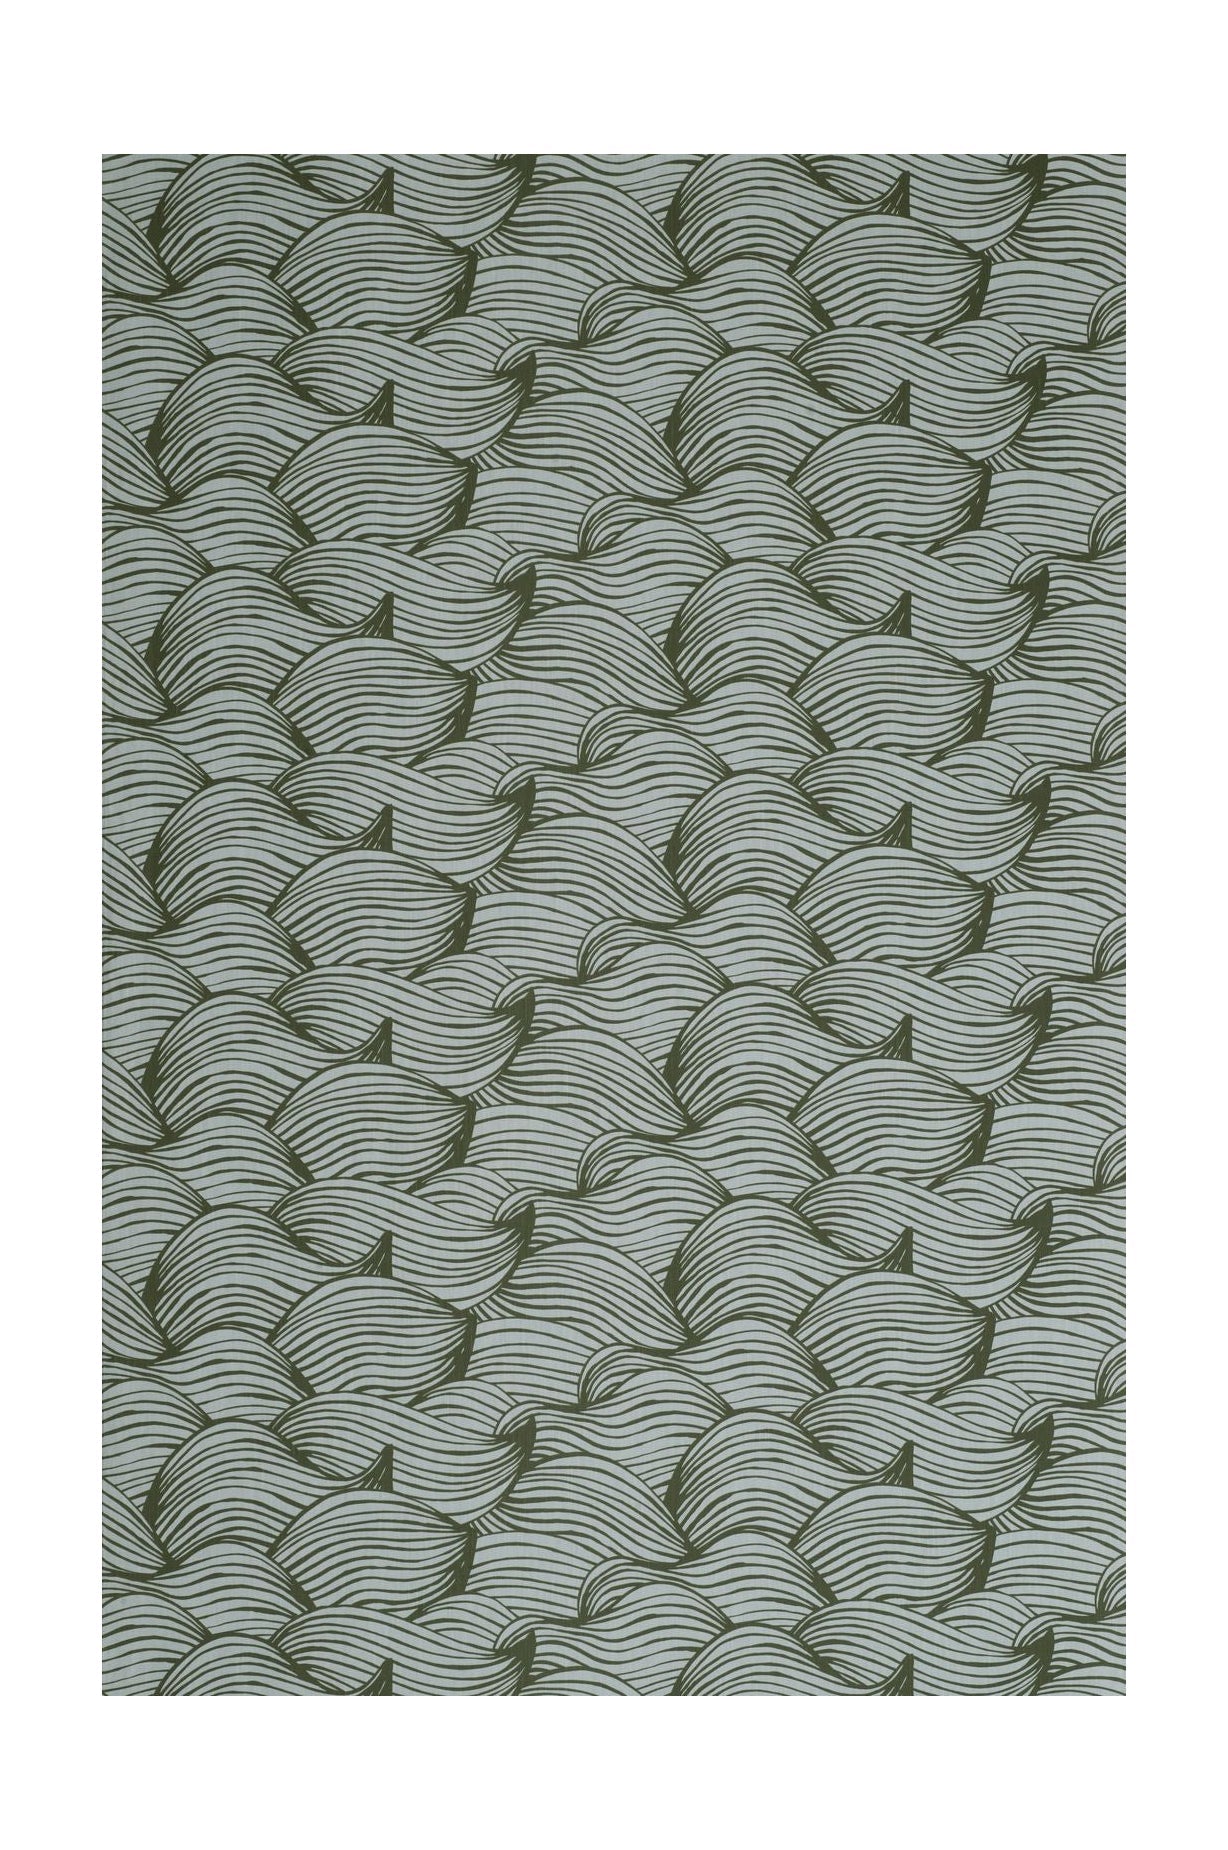 Larghezza del tessuto d'onda Spira 150 cm (prezzo per metro), verde